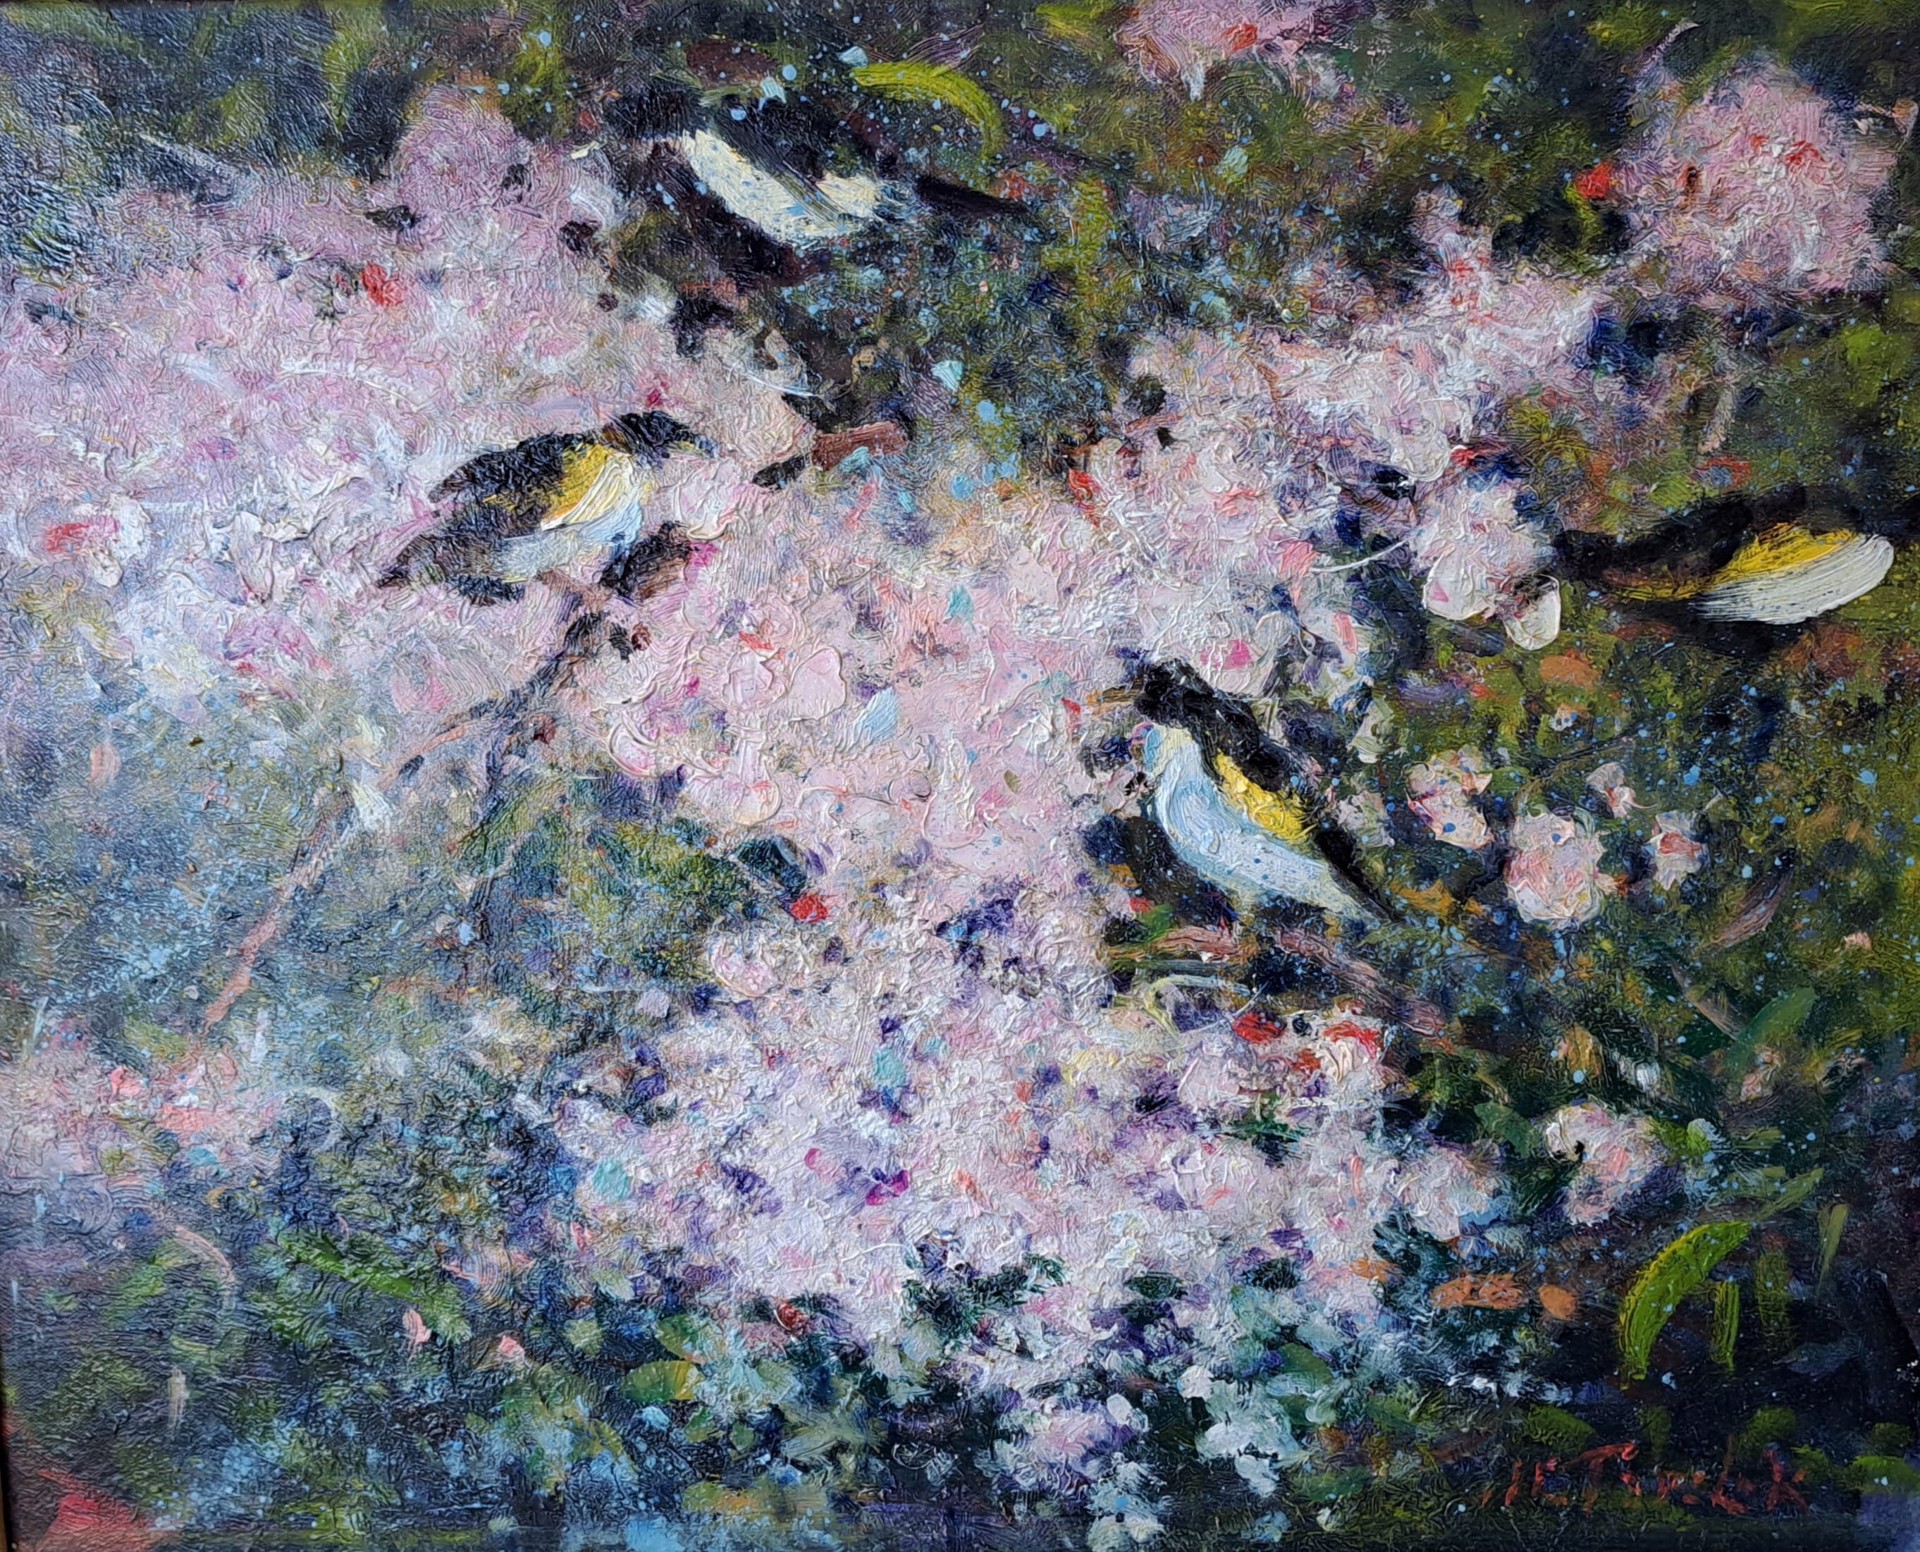 Finches by John Terelak